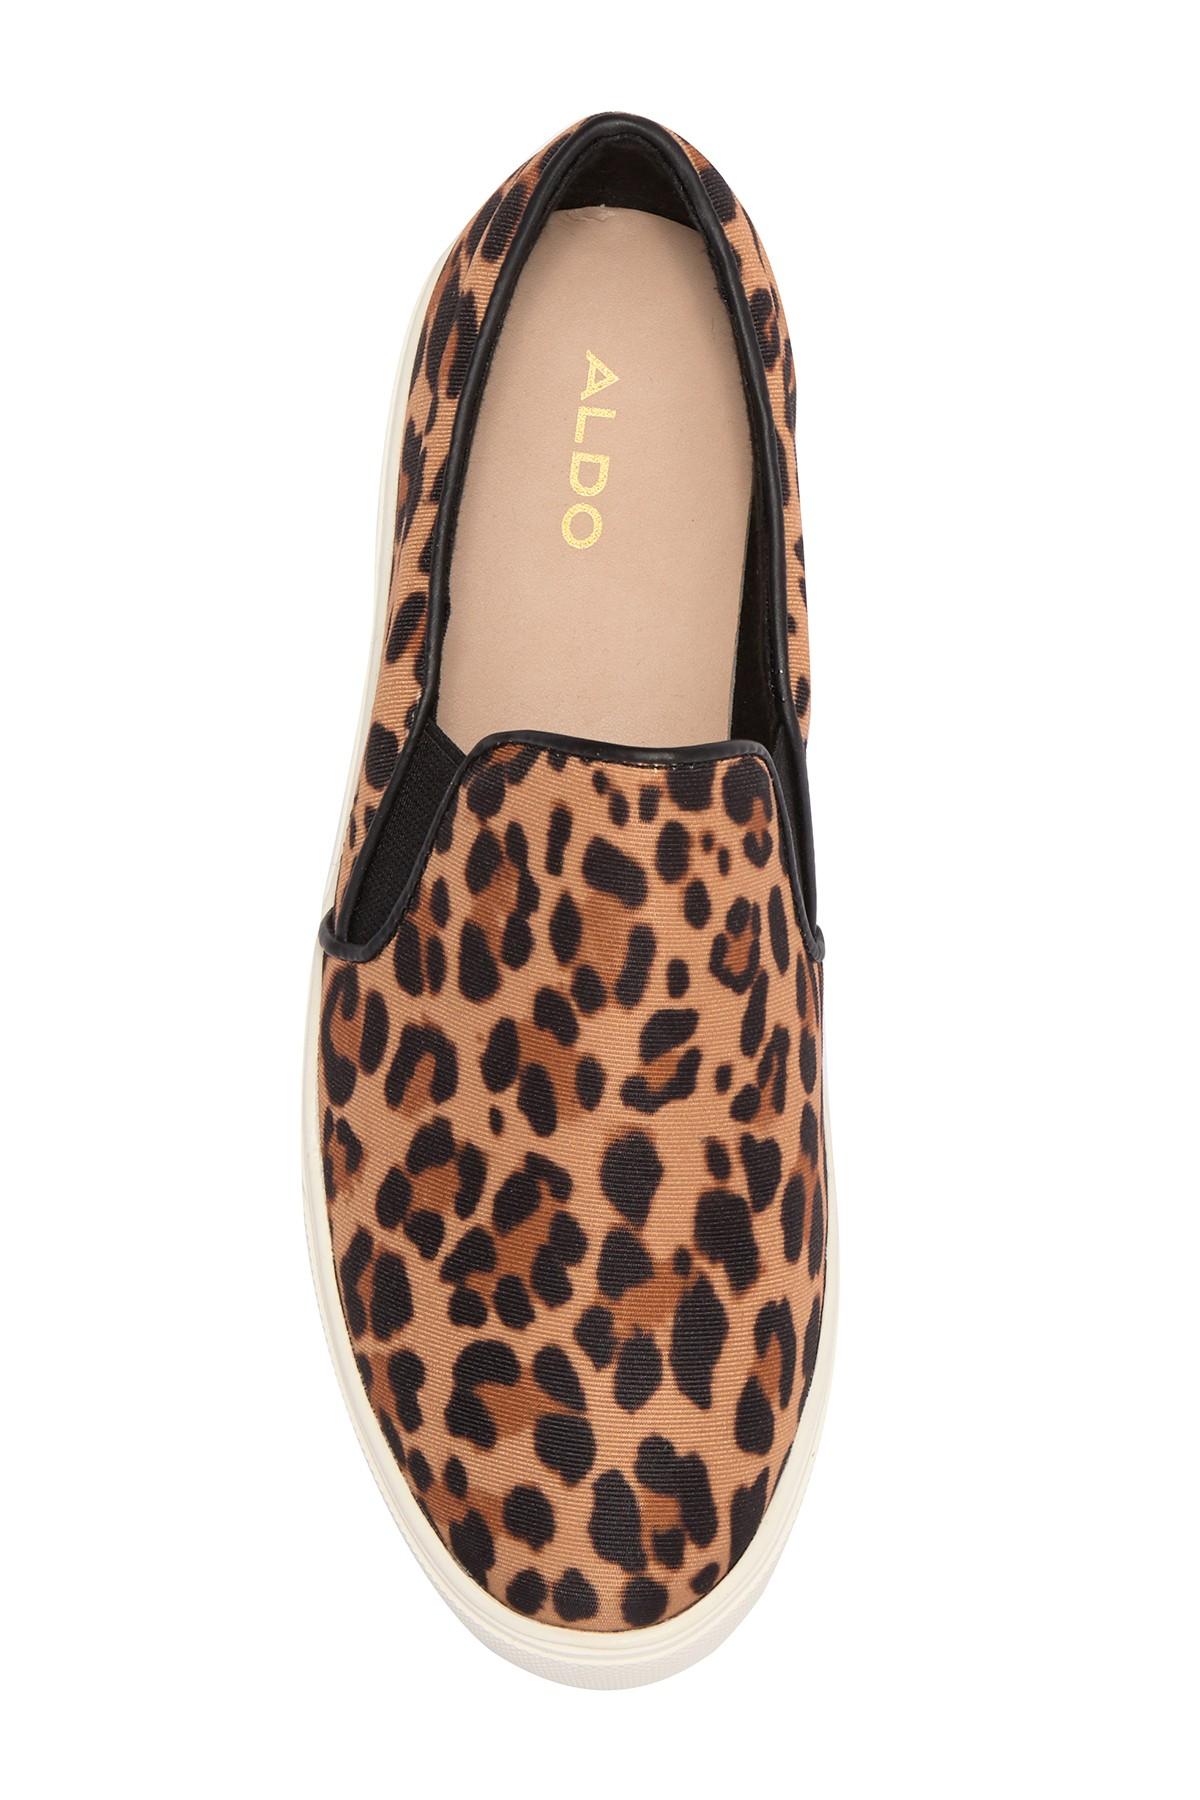 leopard shoes aldo